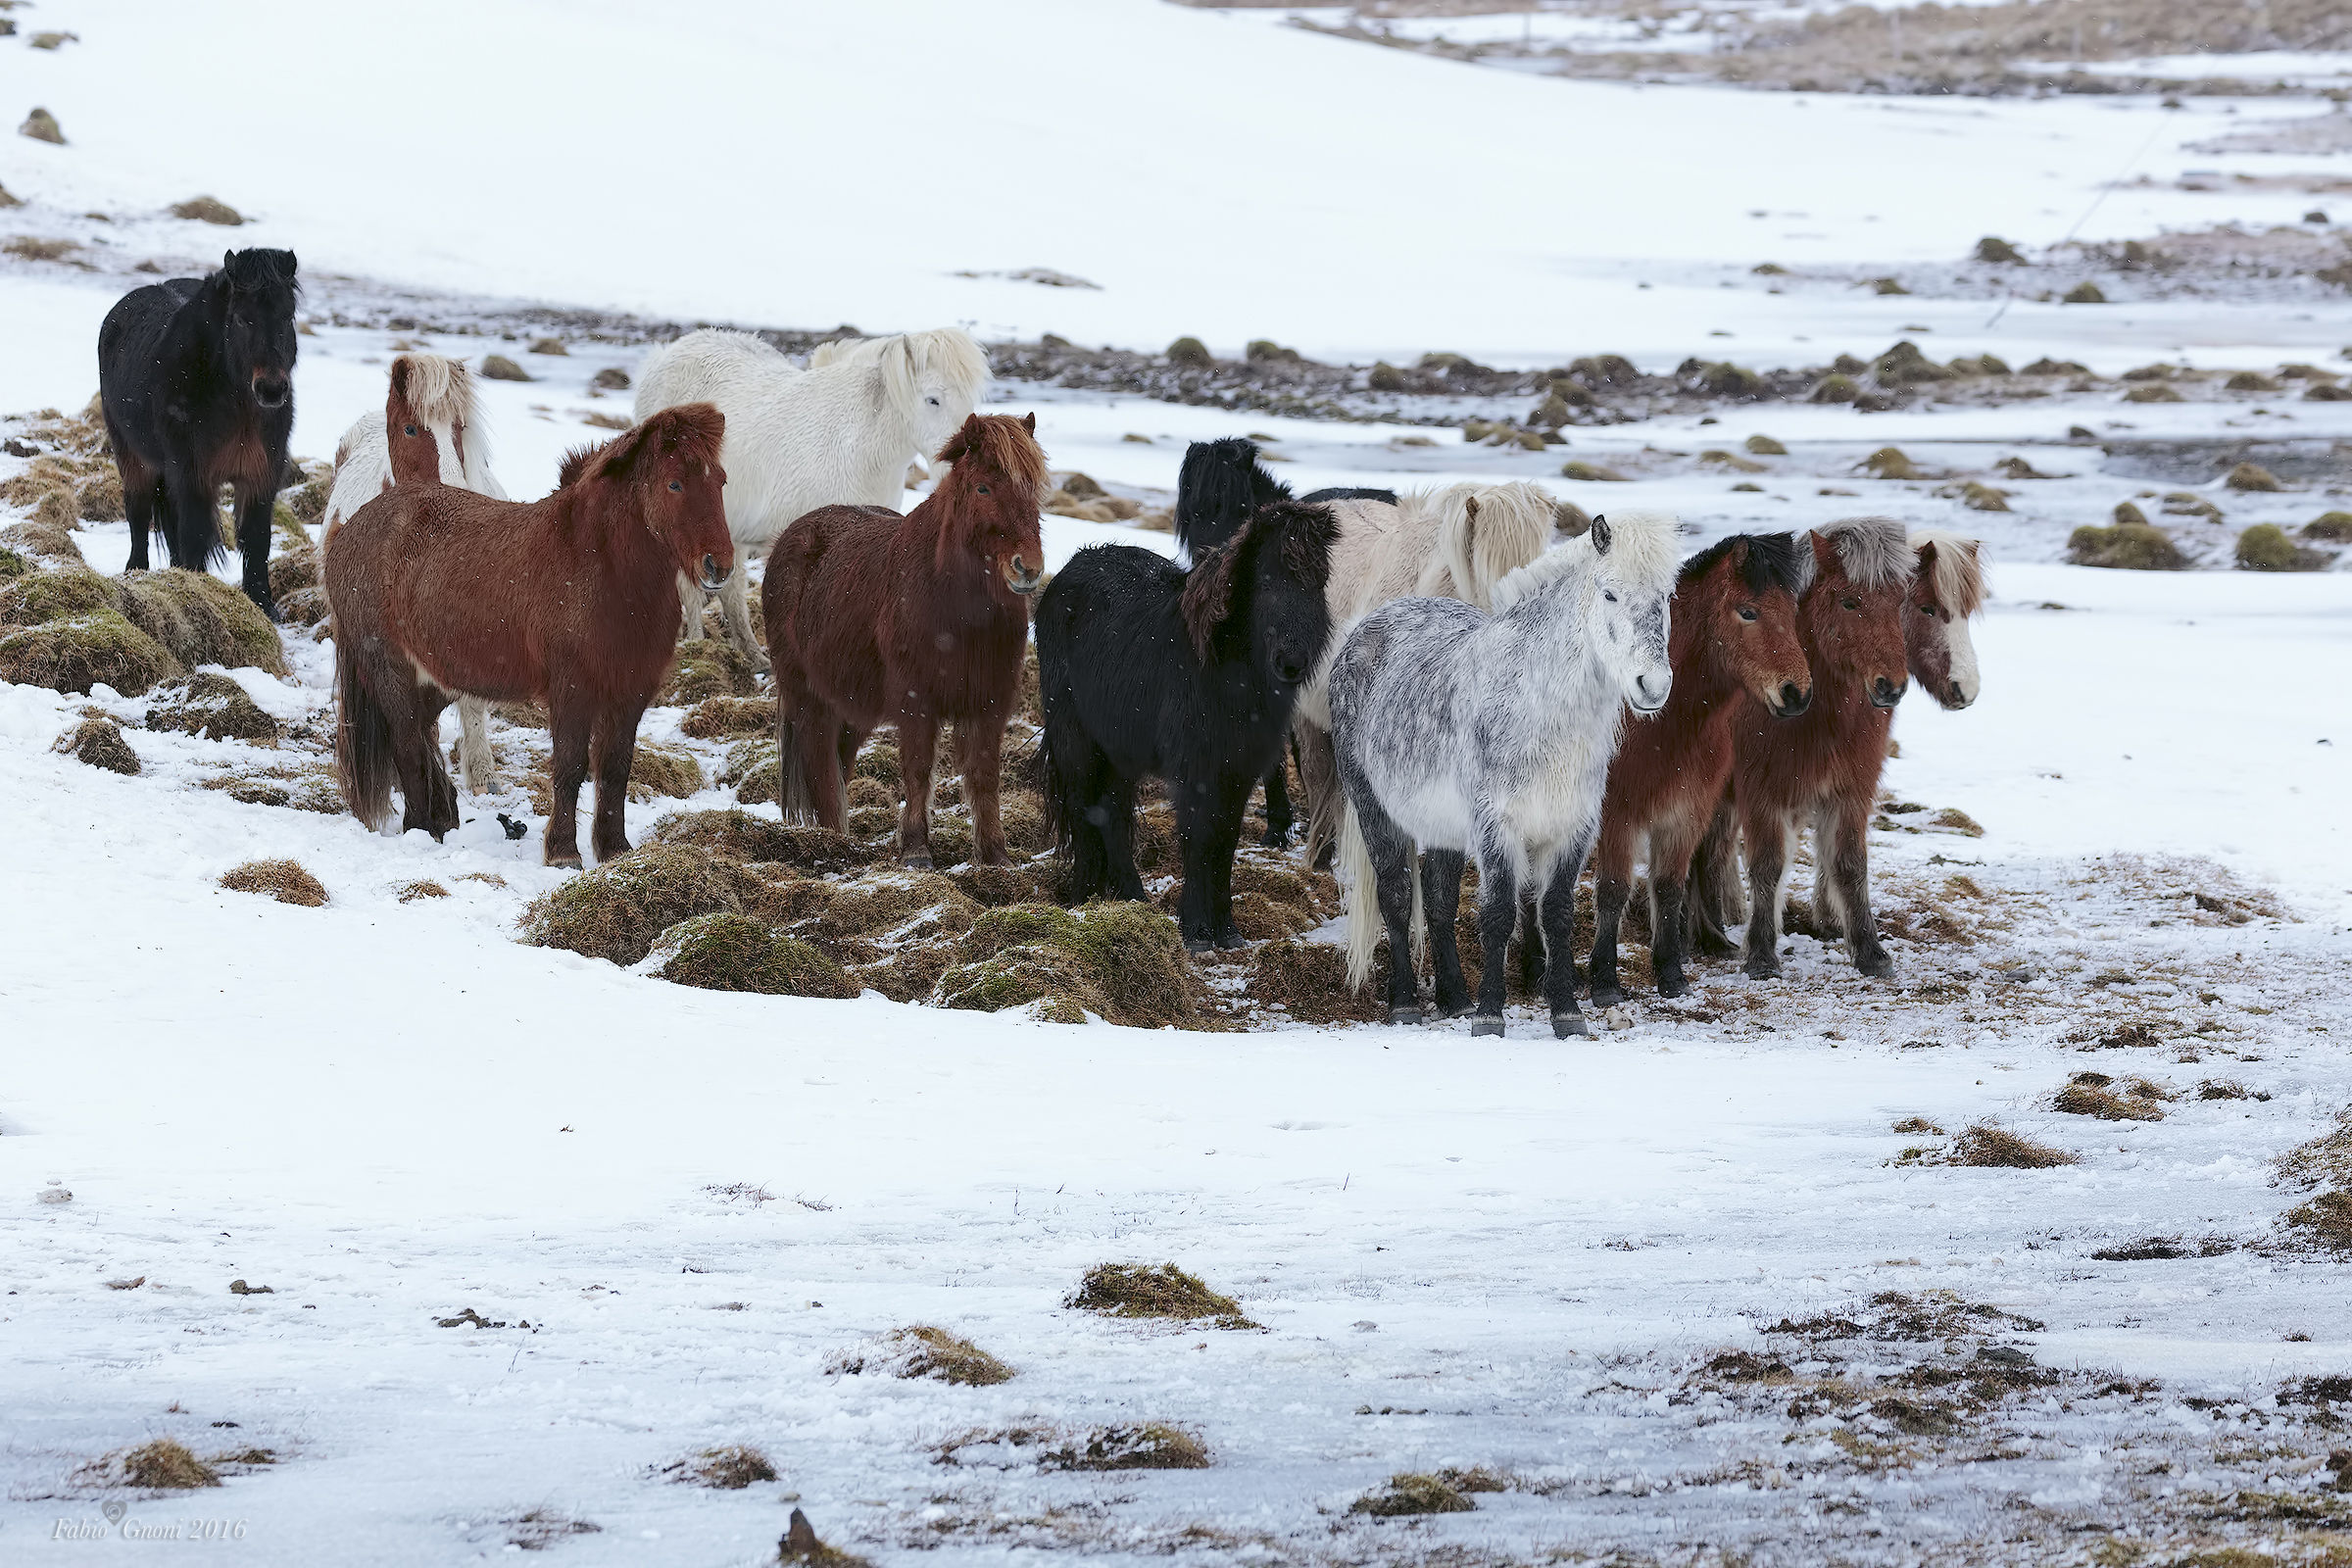 The horses of Kirkjufell...